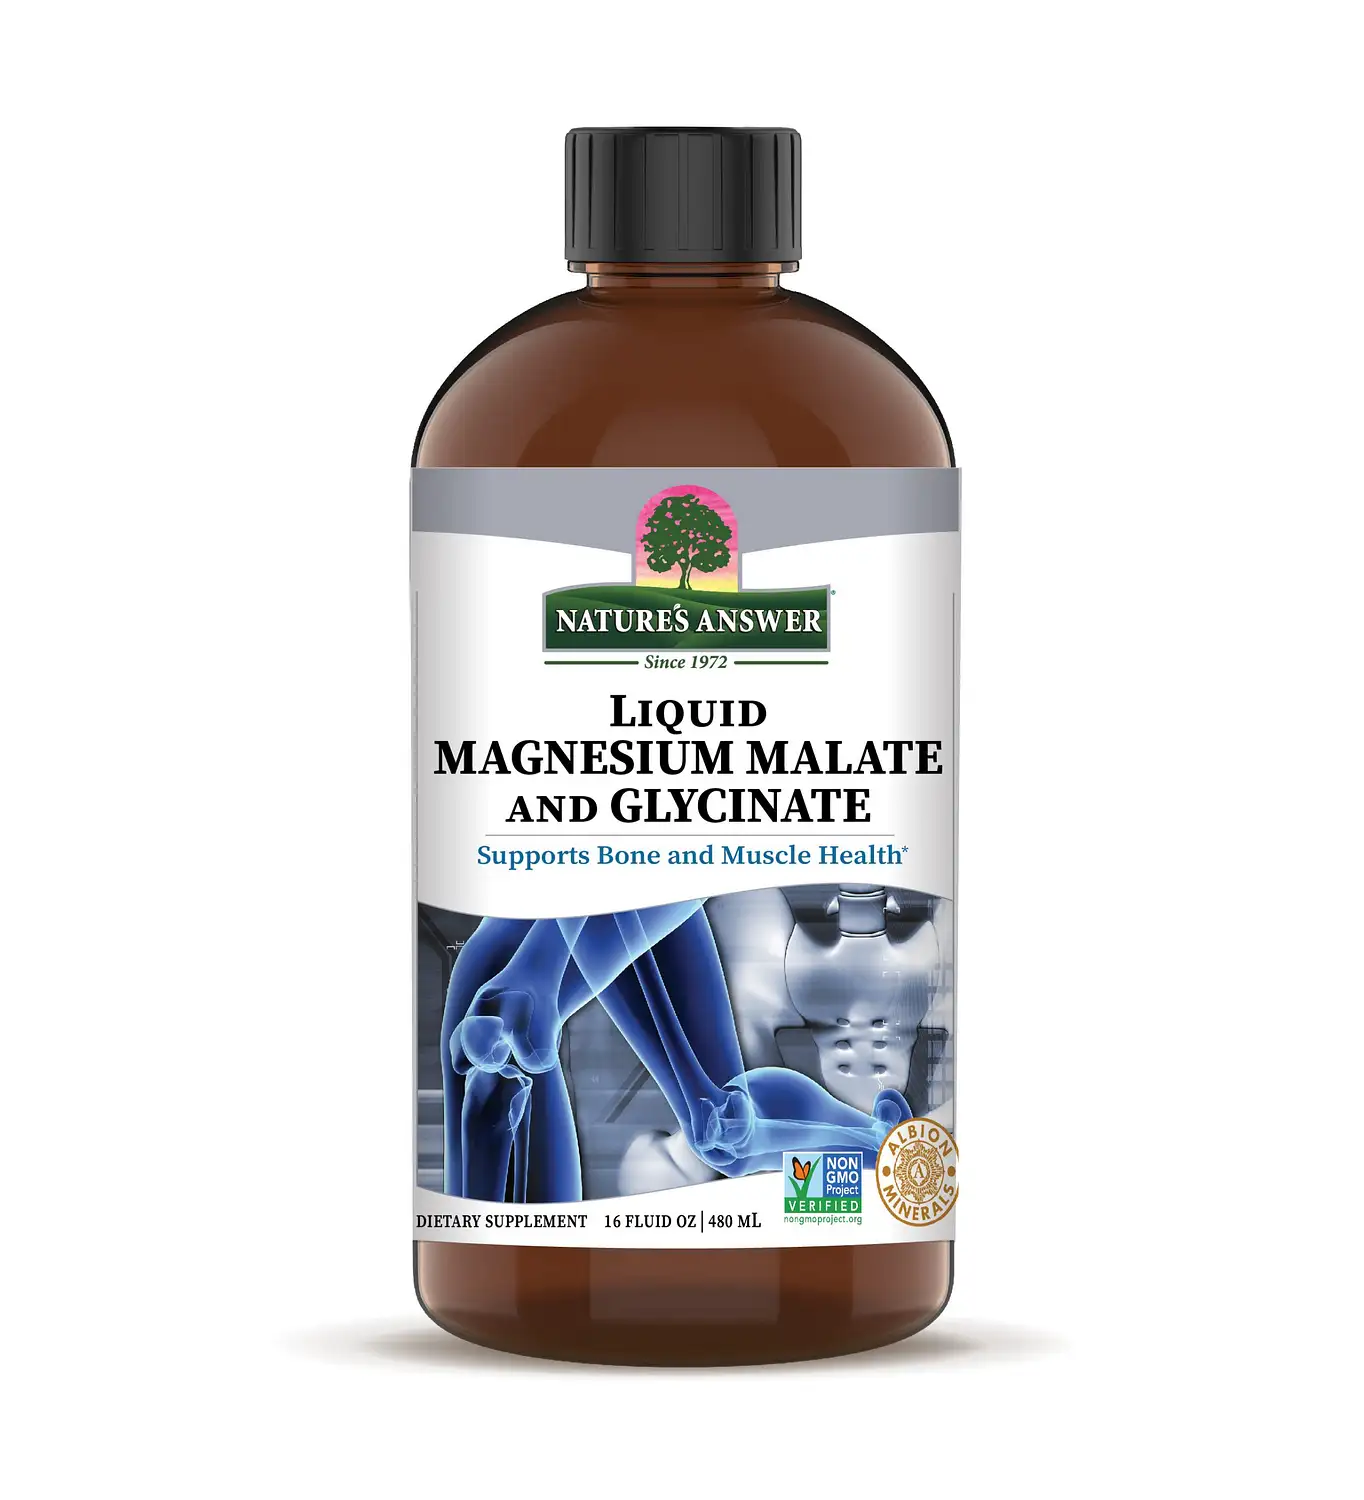 Image of Platinum Liquid Magnesium Malate and Glycinate